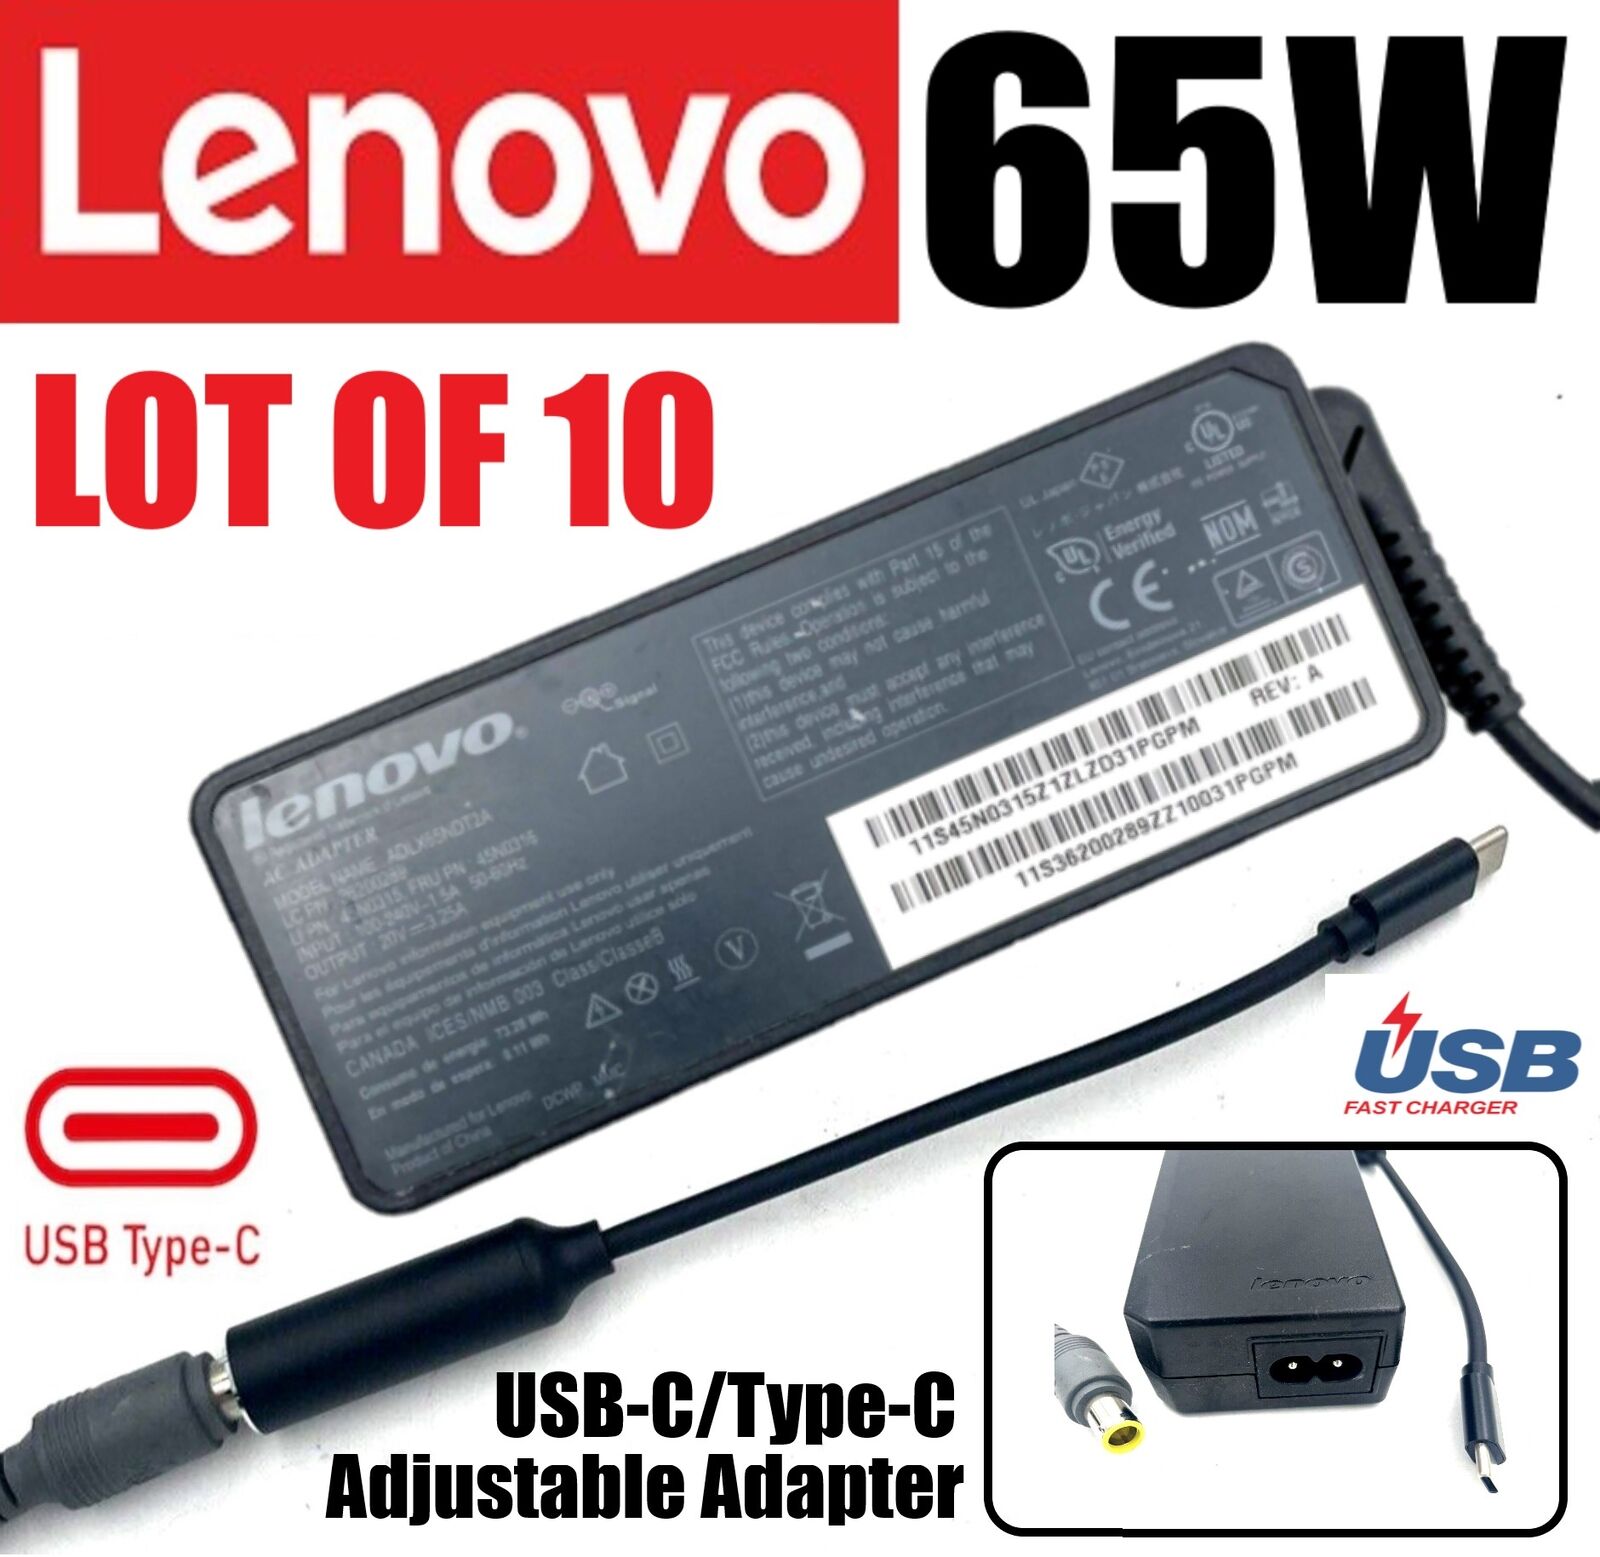 LOT 10 Lenovo T480 T480s T490 T490s T495s T580 T580s T590 65W USB-C AC Adapter